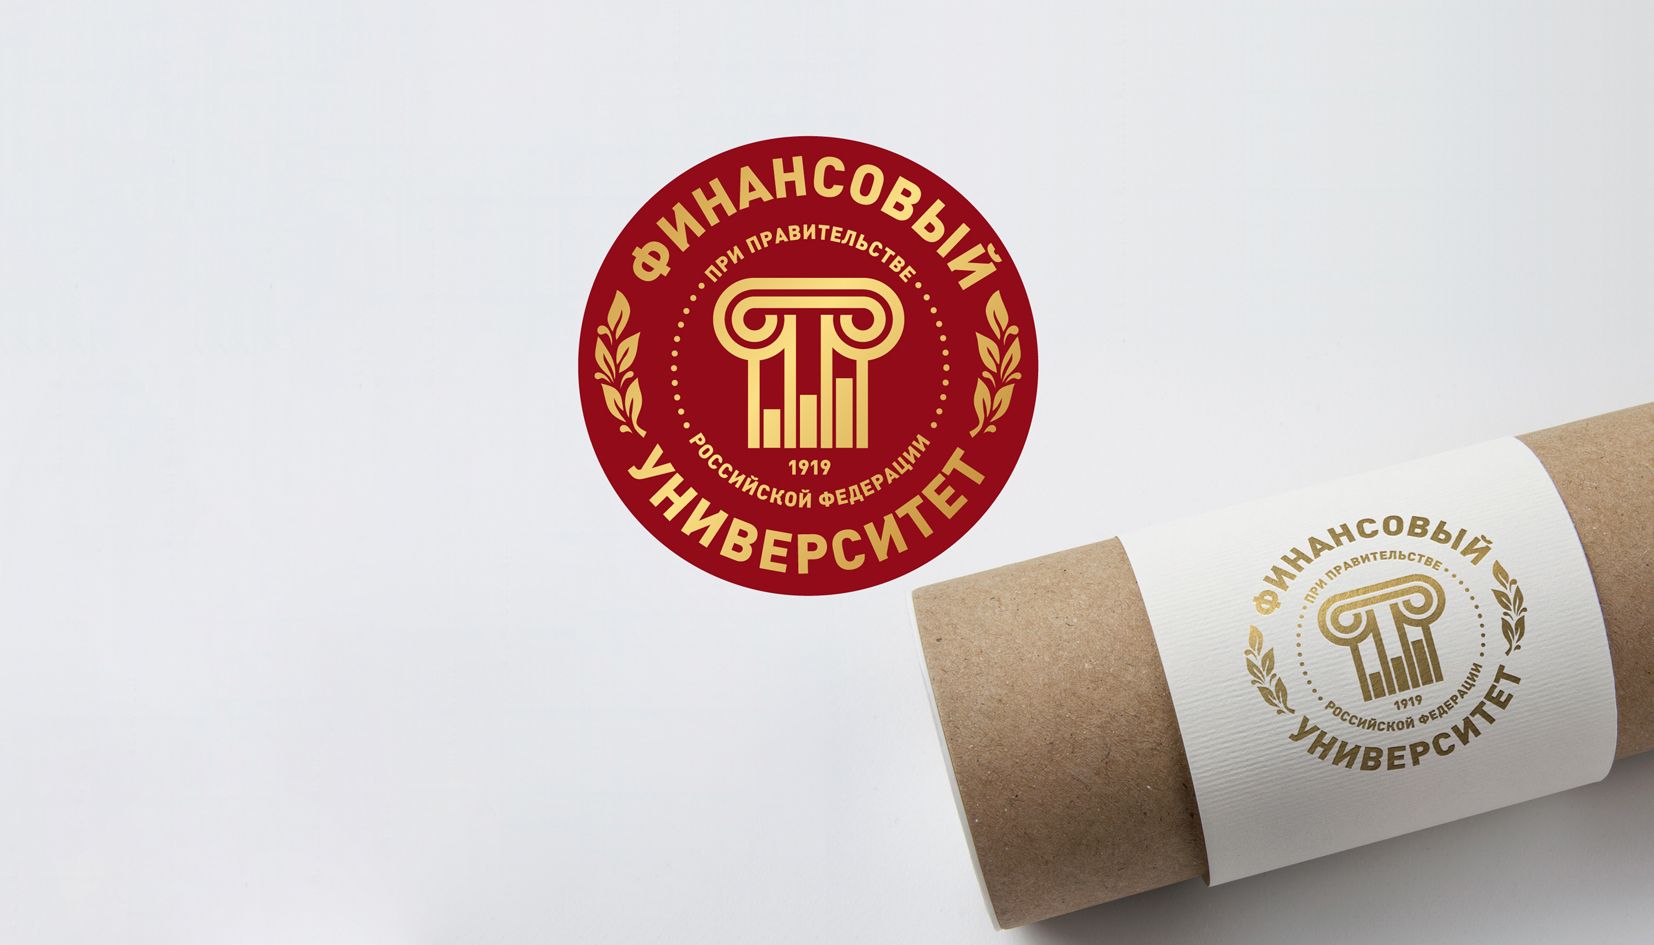 Лого и фирменный стиль для Финансовый университет при Правительстве РФ - дизайнер andblin61